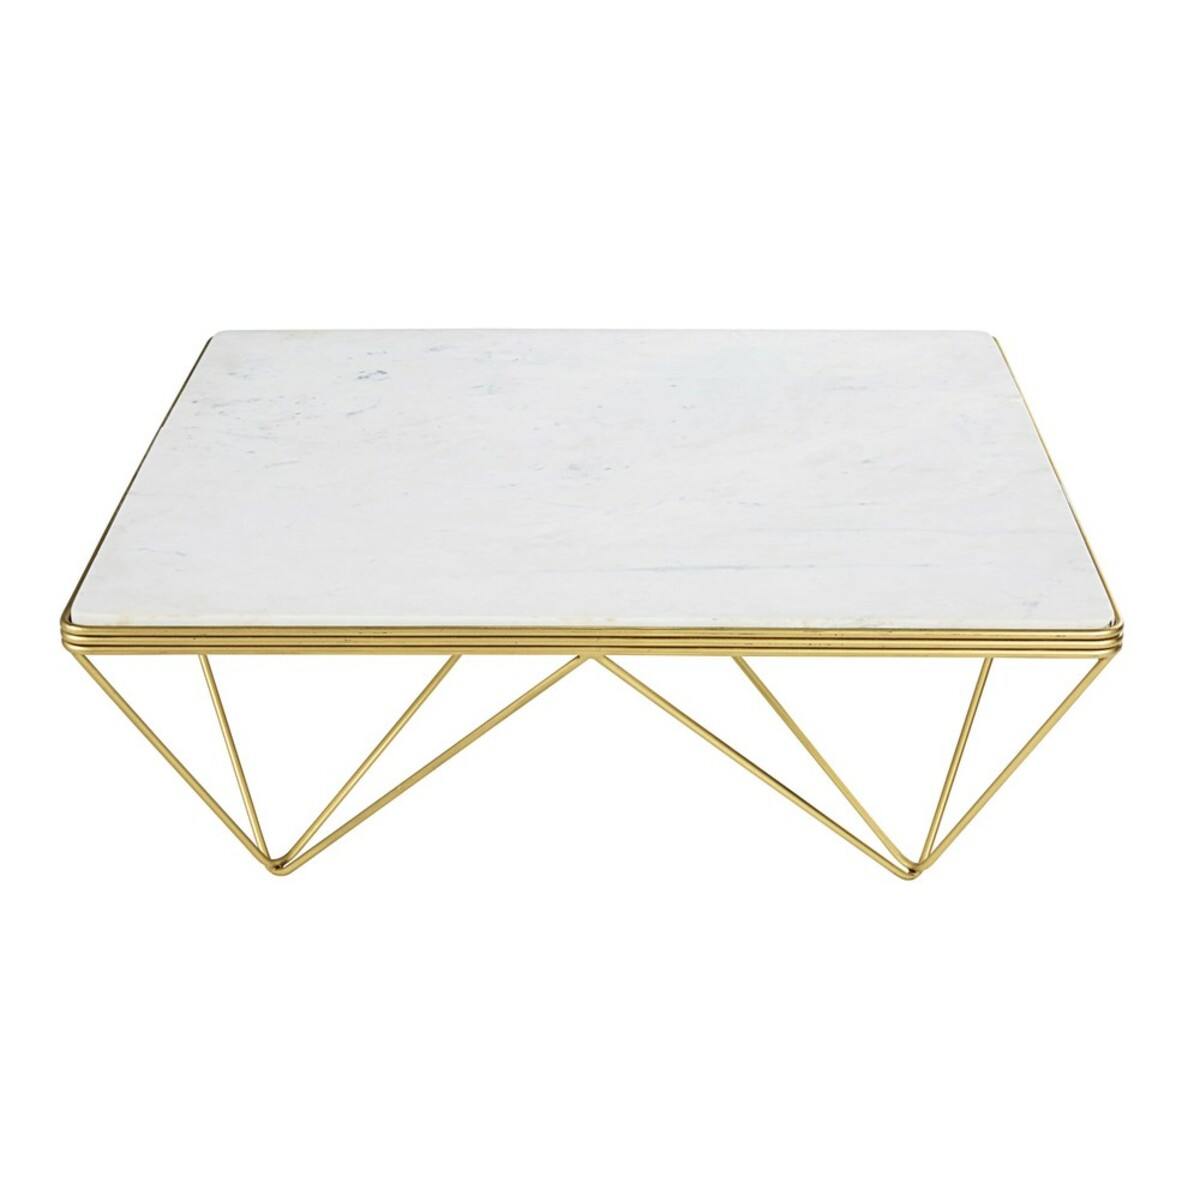 Table basse carrée en marbre et métal doré